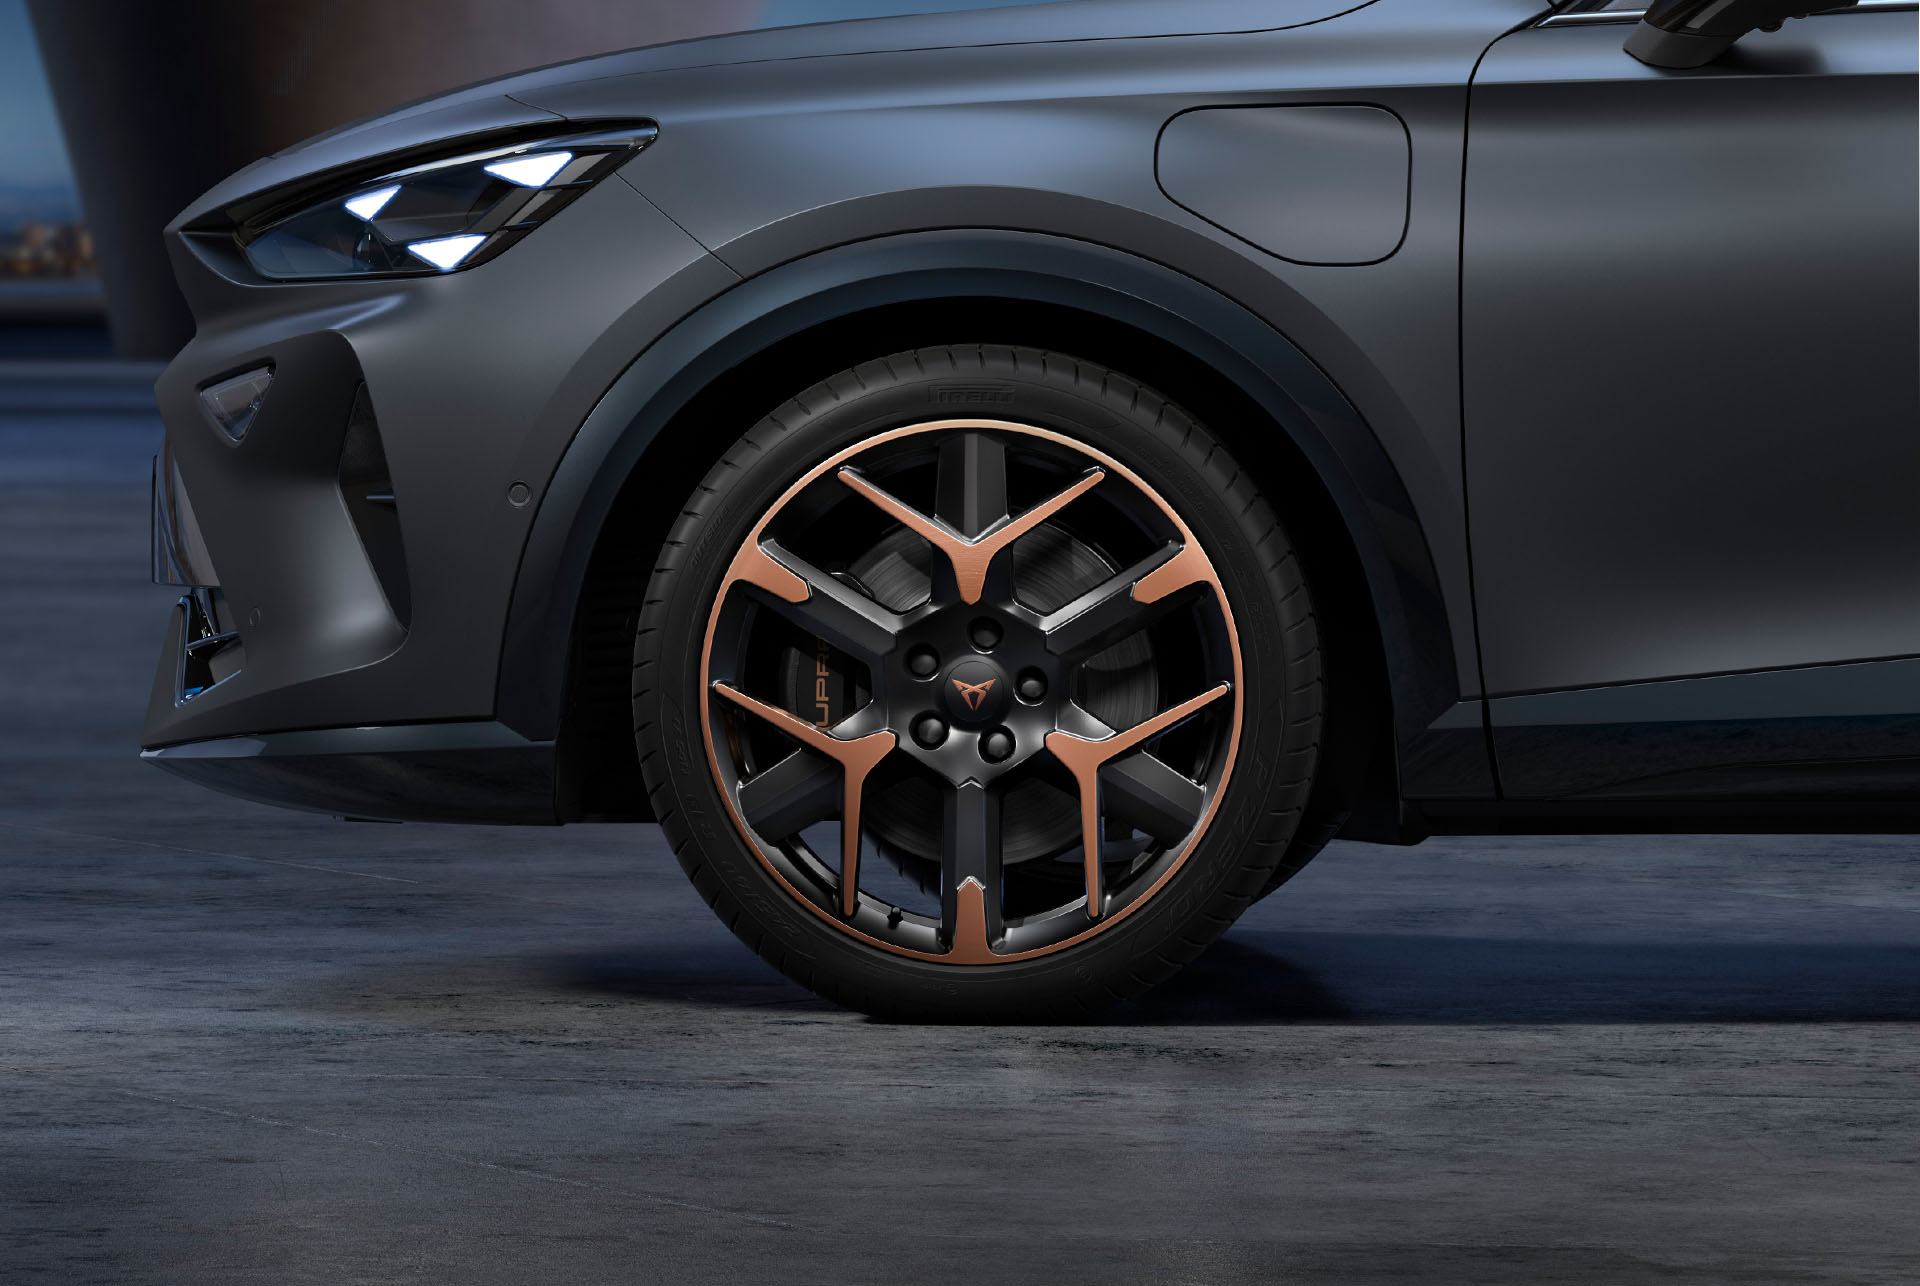 Vordere Seitenansicht der schwarz-kupferfarbenen Schmiedefelgen links, Reifen und typische Scheinwerferform.